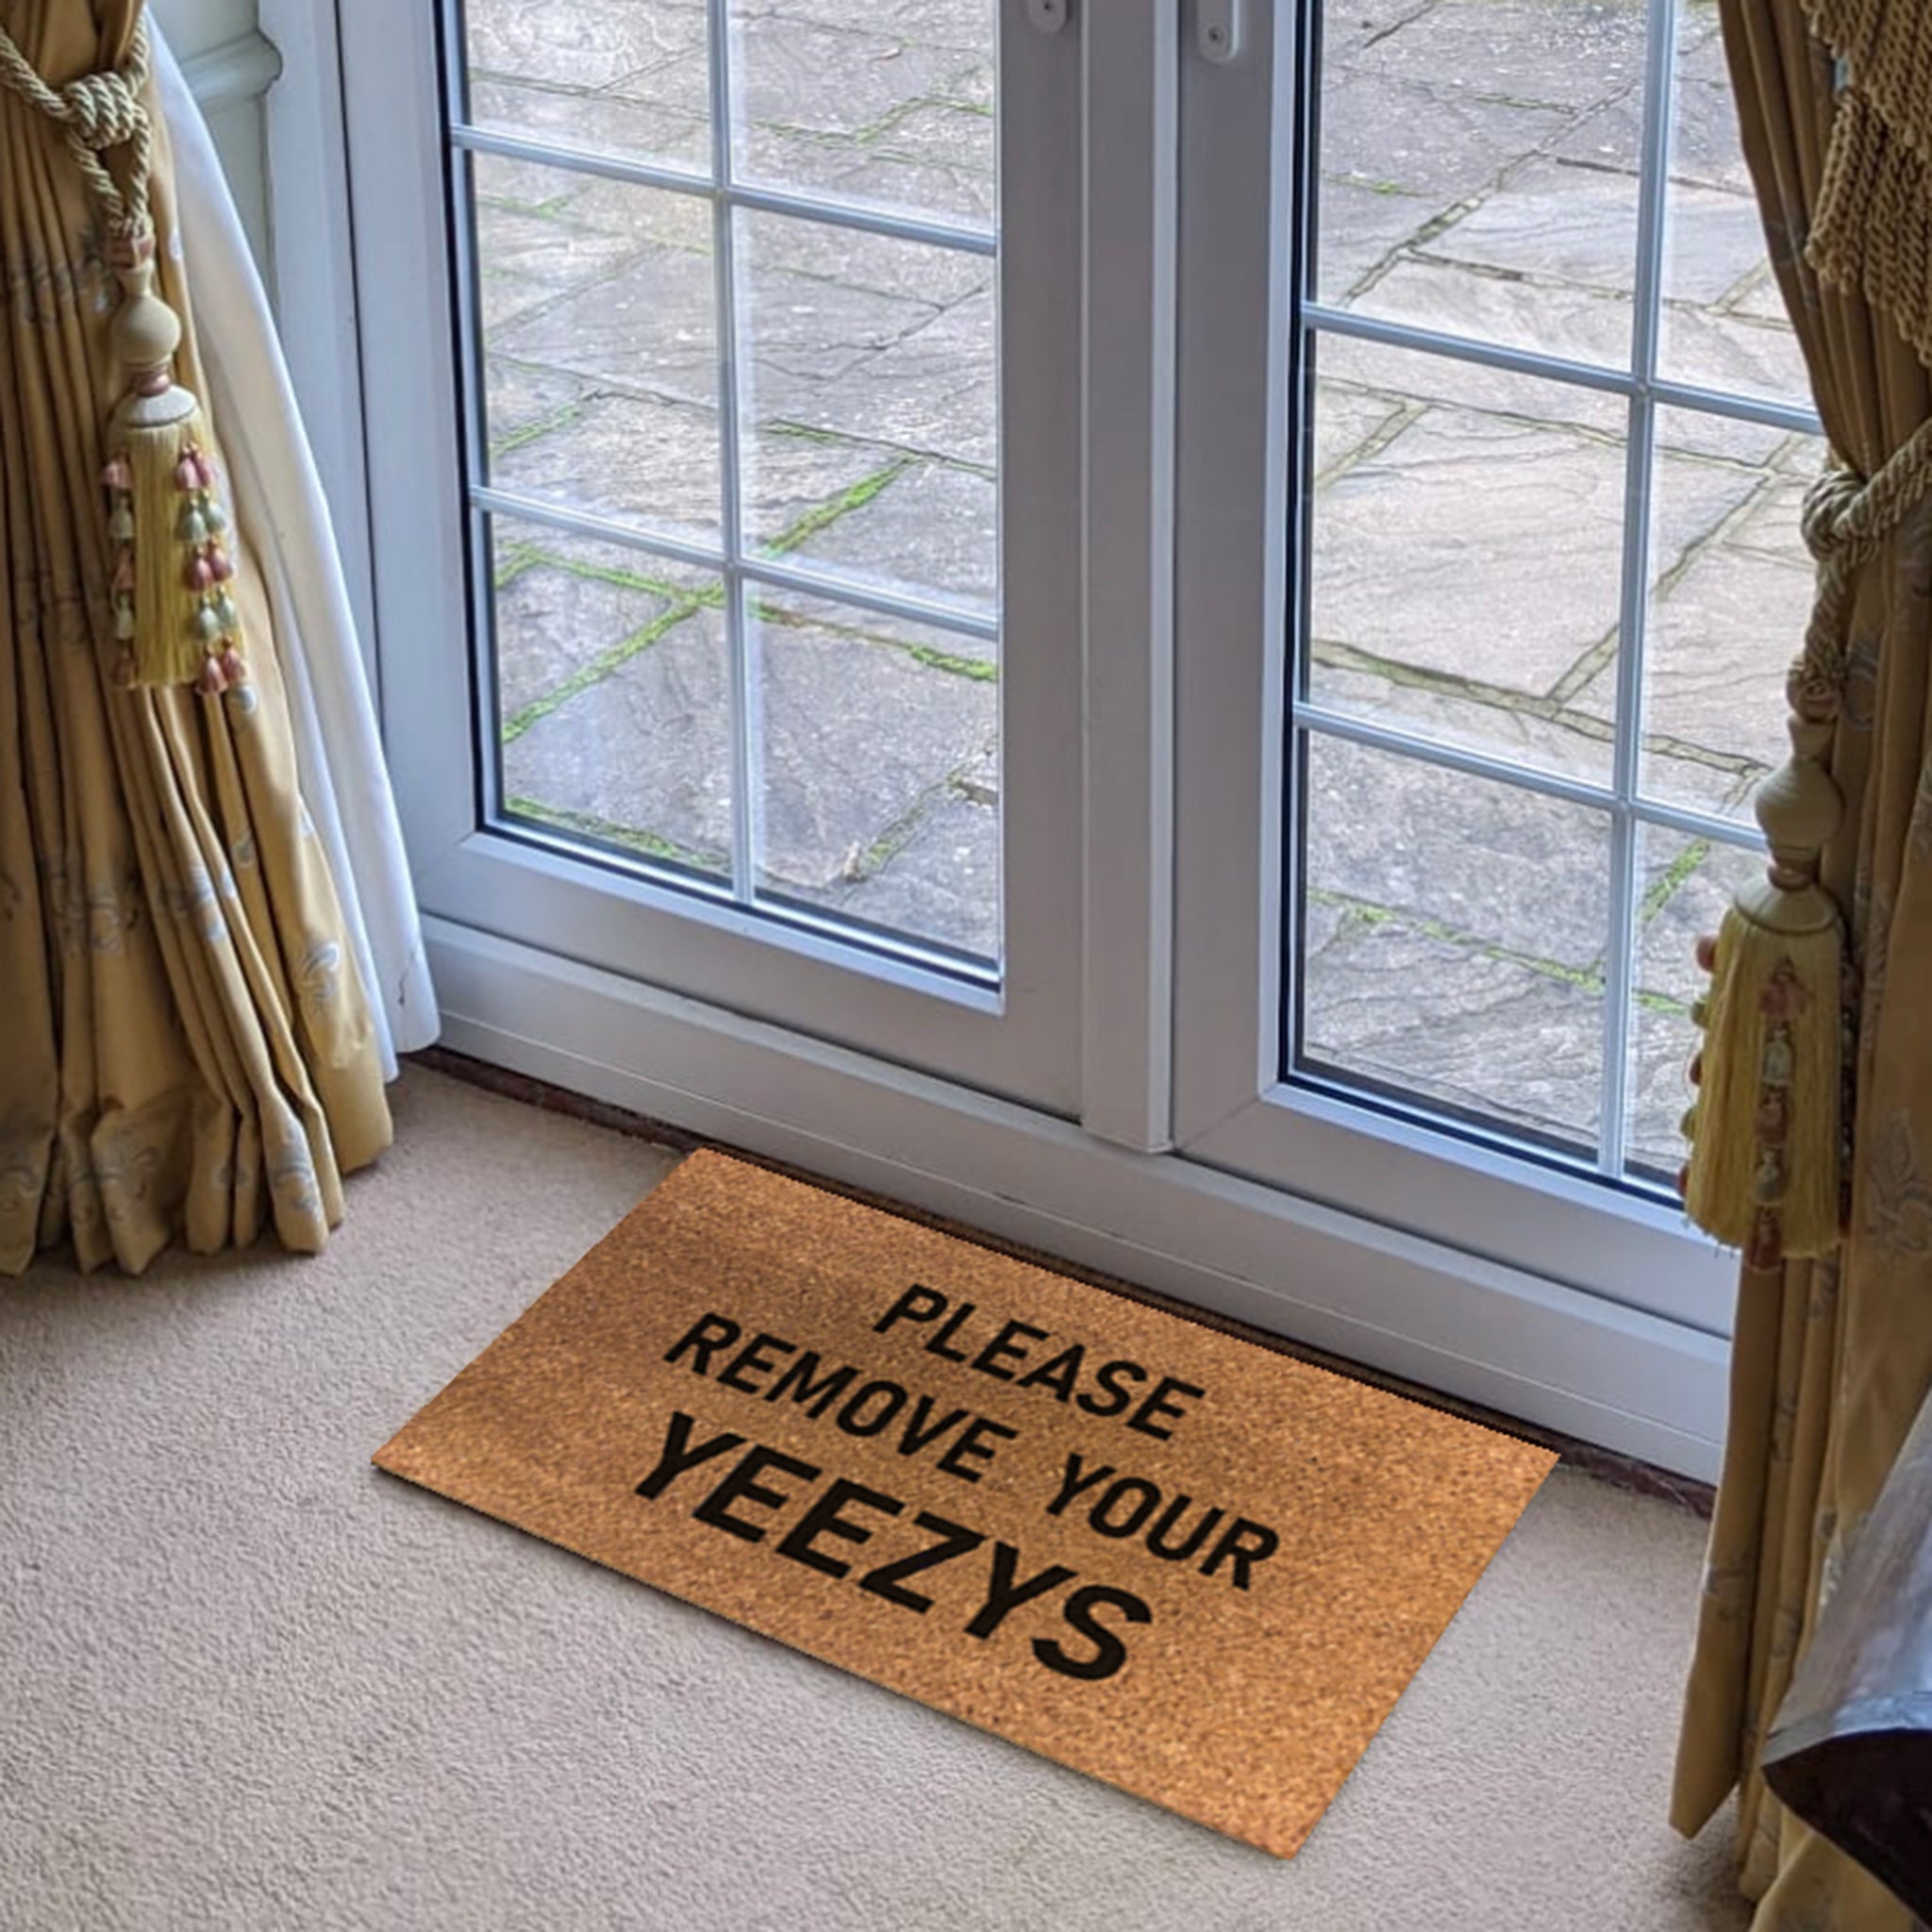 Image of Yeezy Doormat